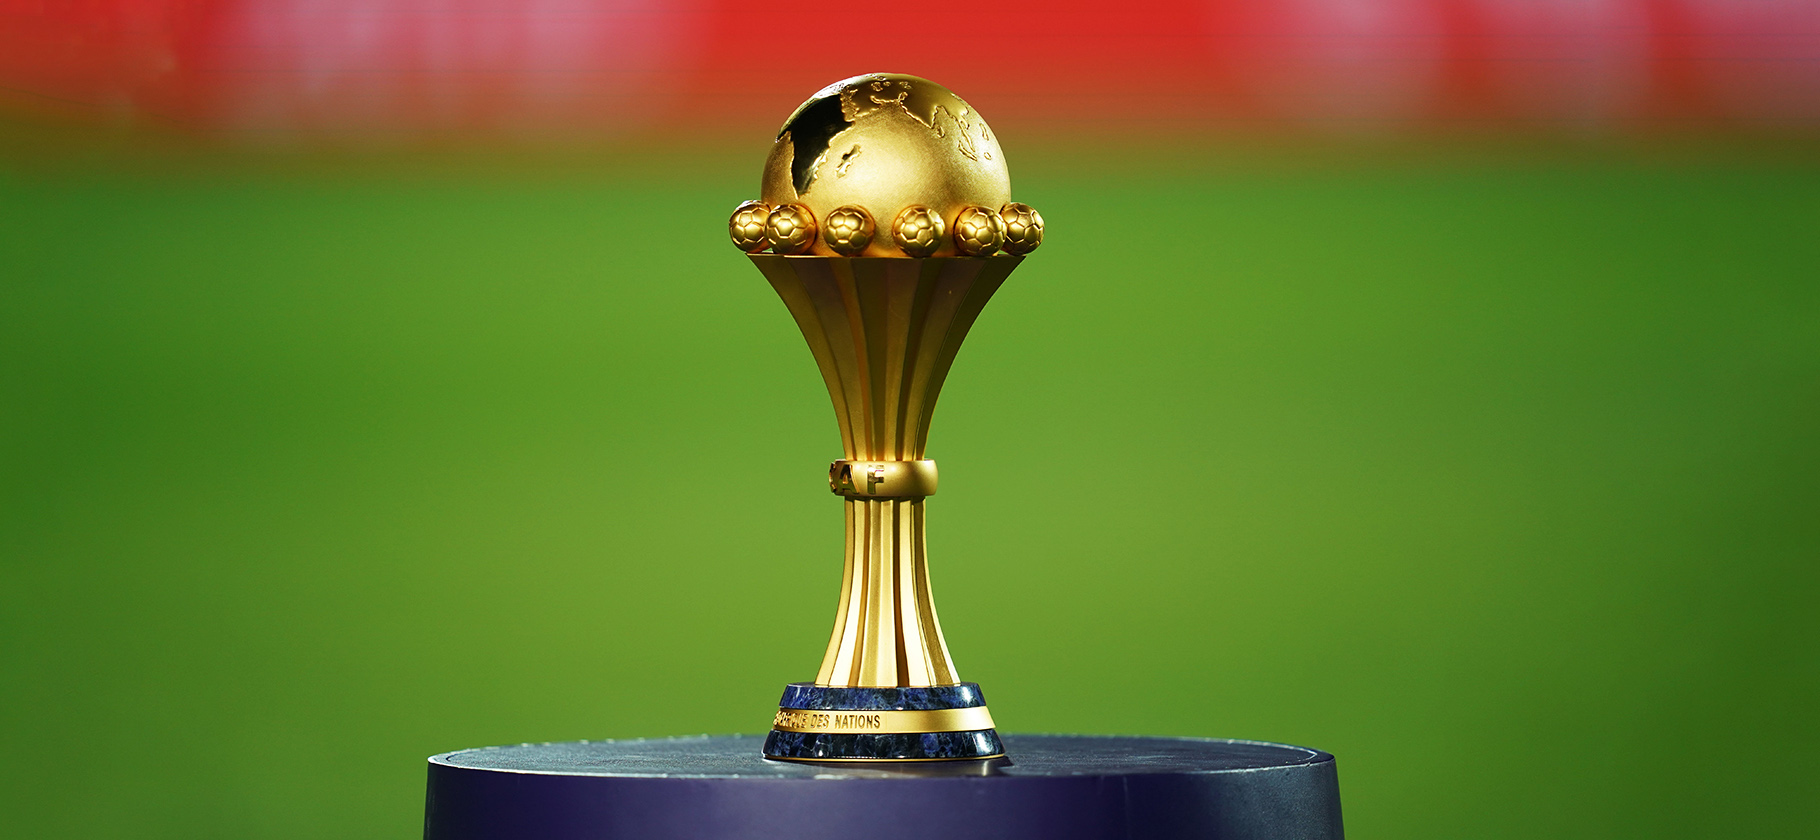 Египет поделил очки с Кабо-Верде и другие результаты третьего тура Кубка Африки